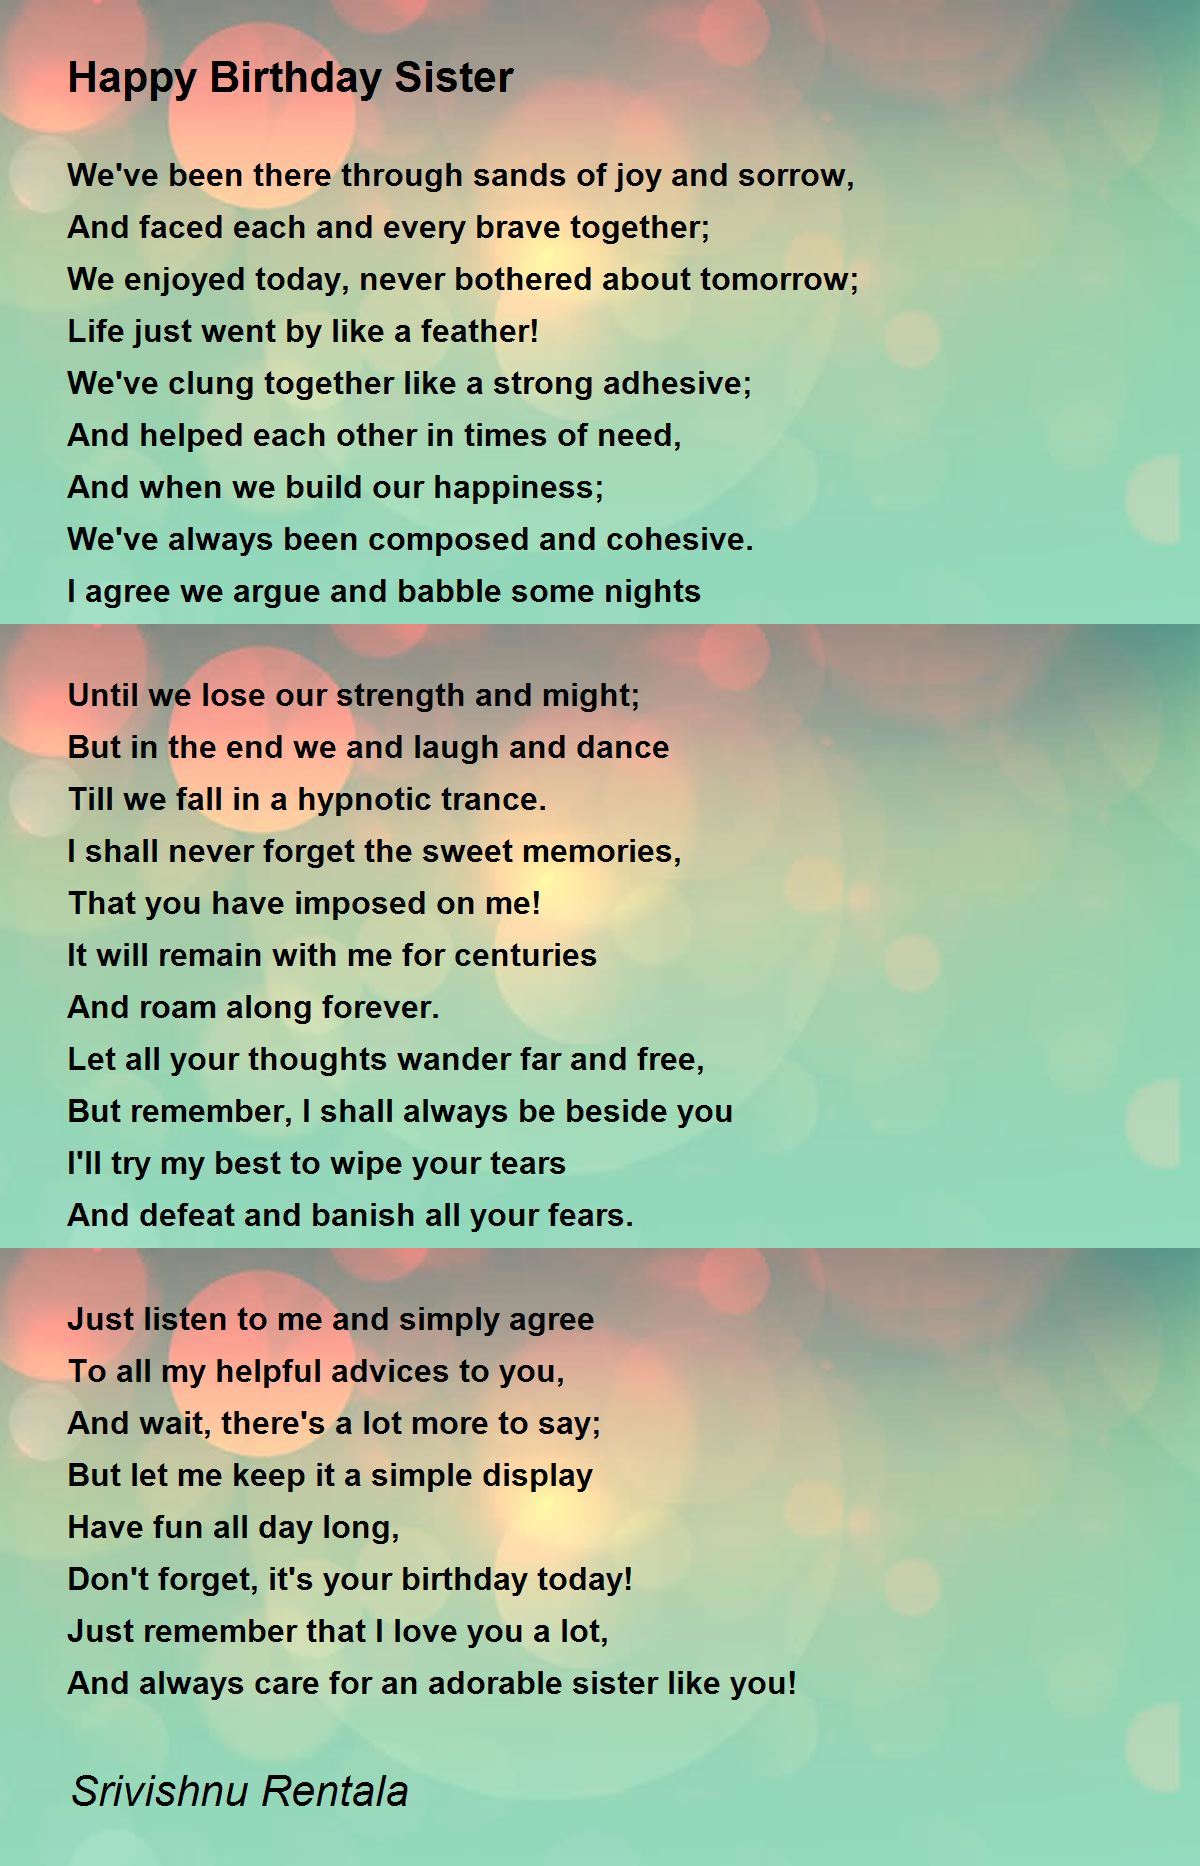 Happy Birthday Sister - Happy Birthday Sister Poem by Srivishnu Rentala